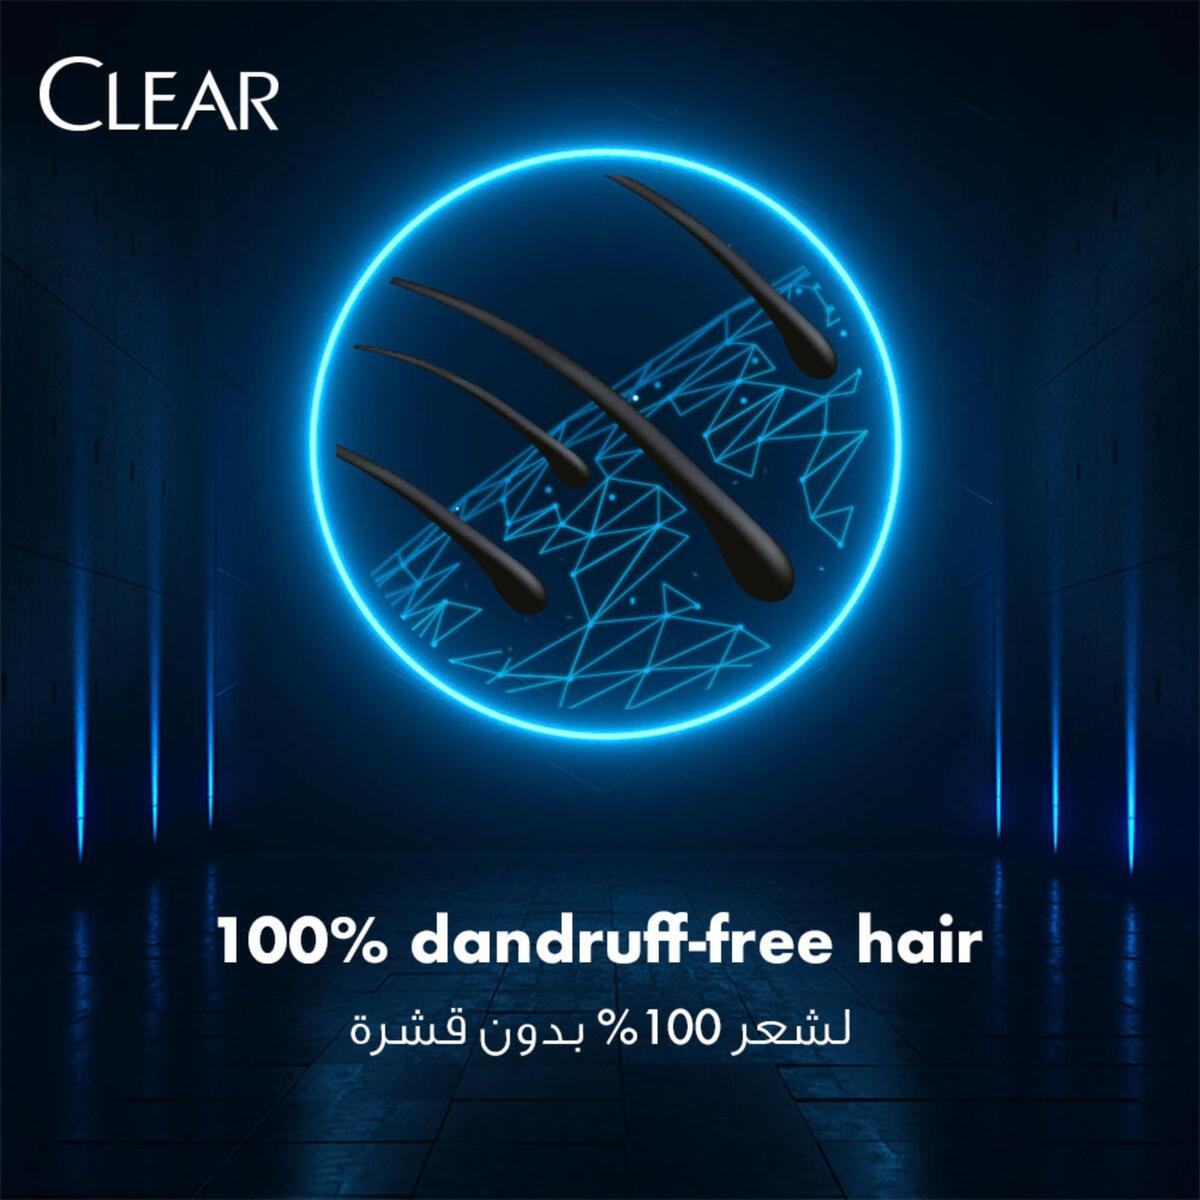 Clear Men Anti-Dandruff Shampoo Cool Sport Menthol 2 x 350 ml